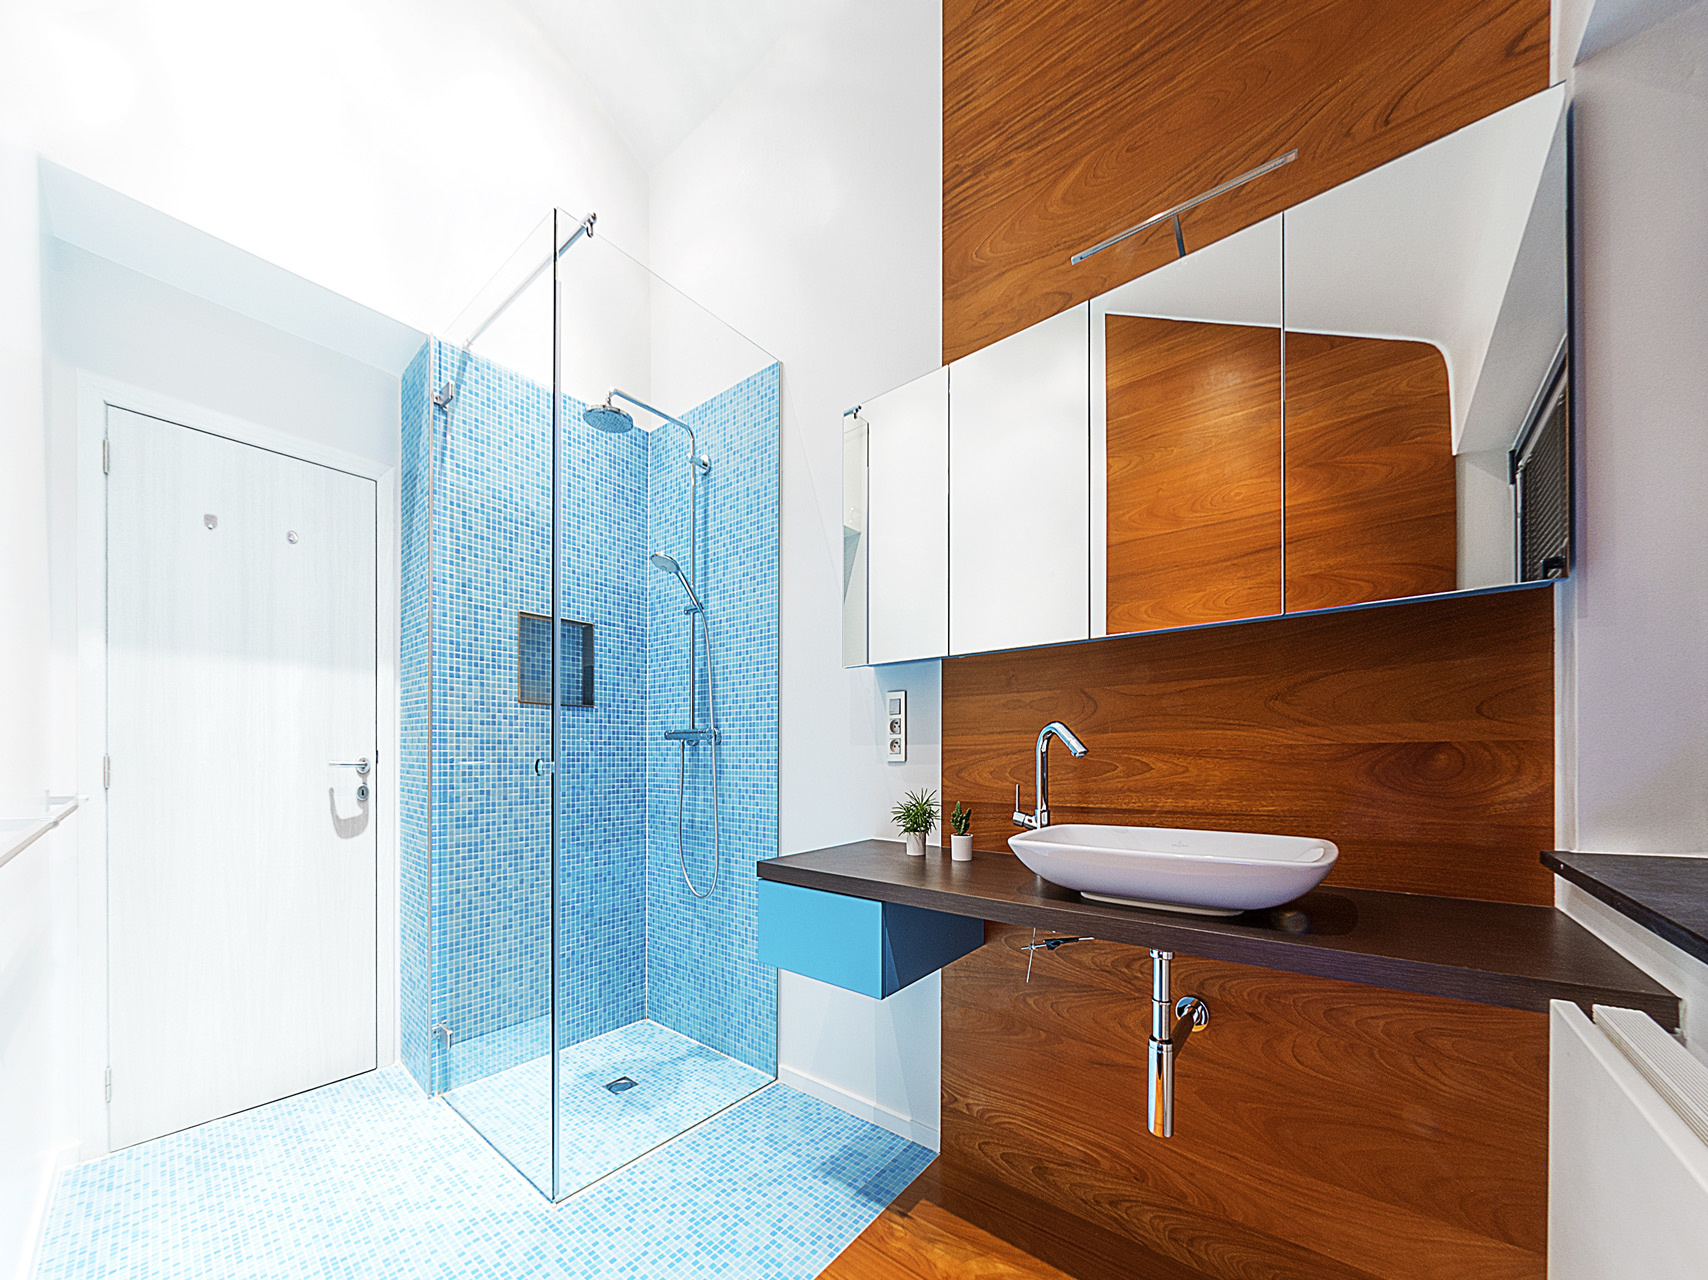 Compacte badkamer Tienen combinatie mozaïek-tegeltjes met warme parket douche met randloze glazen wanden strak wastafeltje moderne pompbak